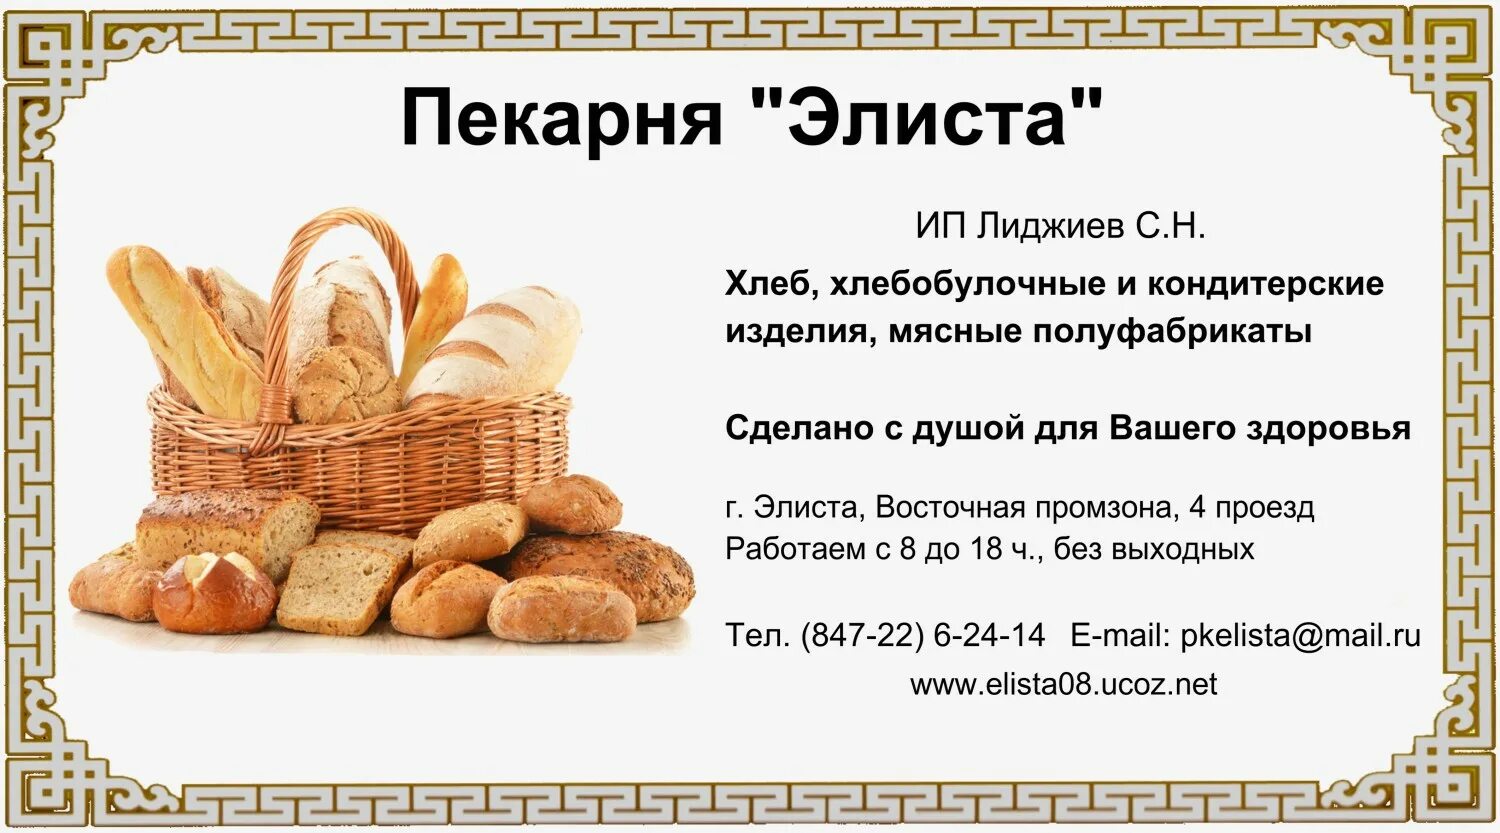 Рекламирование хлеба и хлебобулочных изделий. Реклама хлебобулочных изделий. Хлебобулочные изделия названия. Рекламные текста для хлебобулочных изделий.